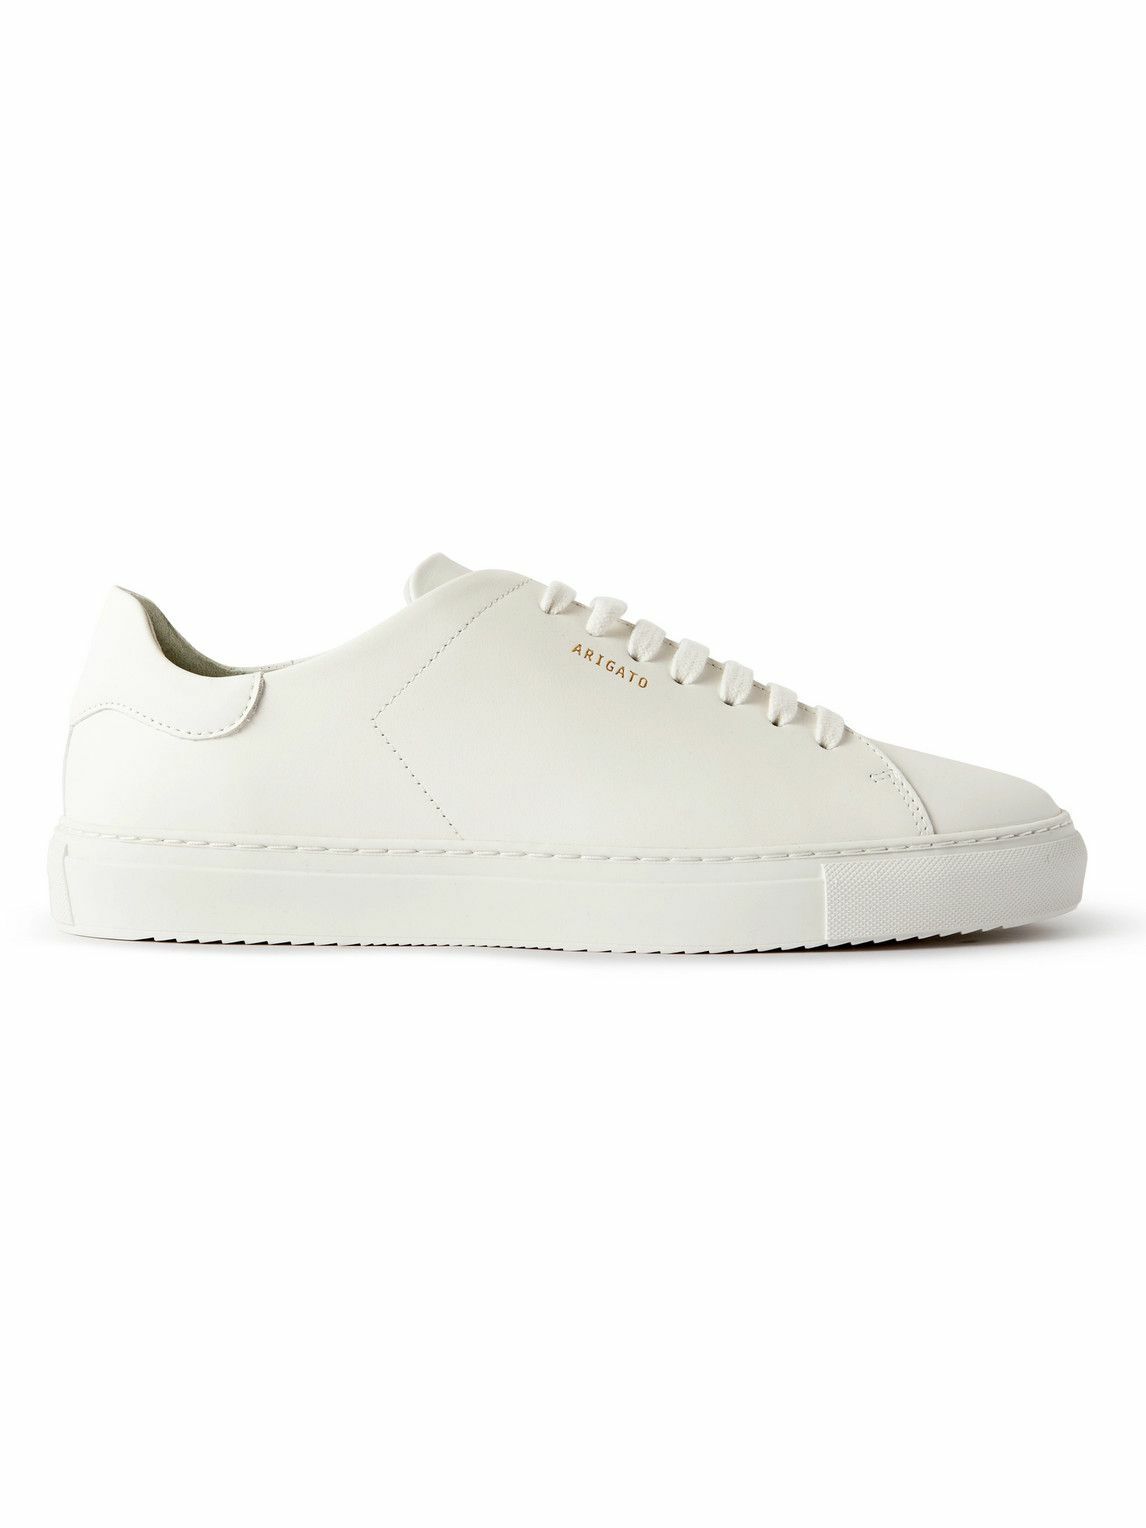 Axel Arigato - Clean 90 Leather Sneakers - White Axel Arigato